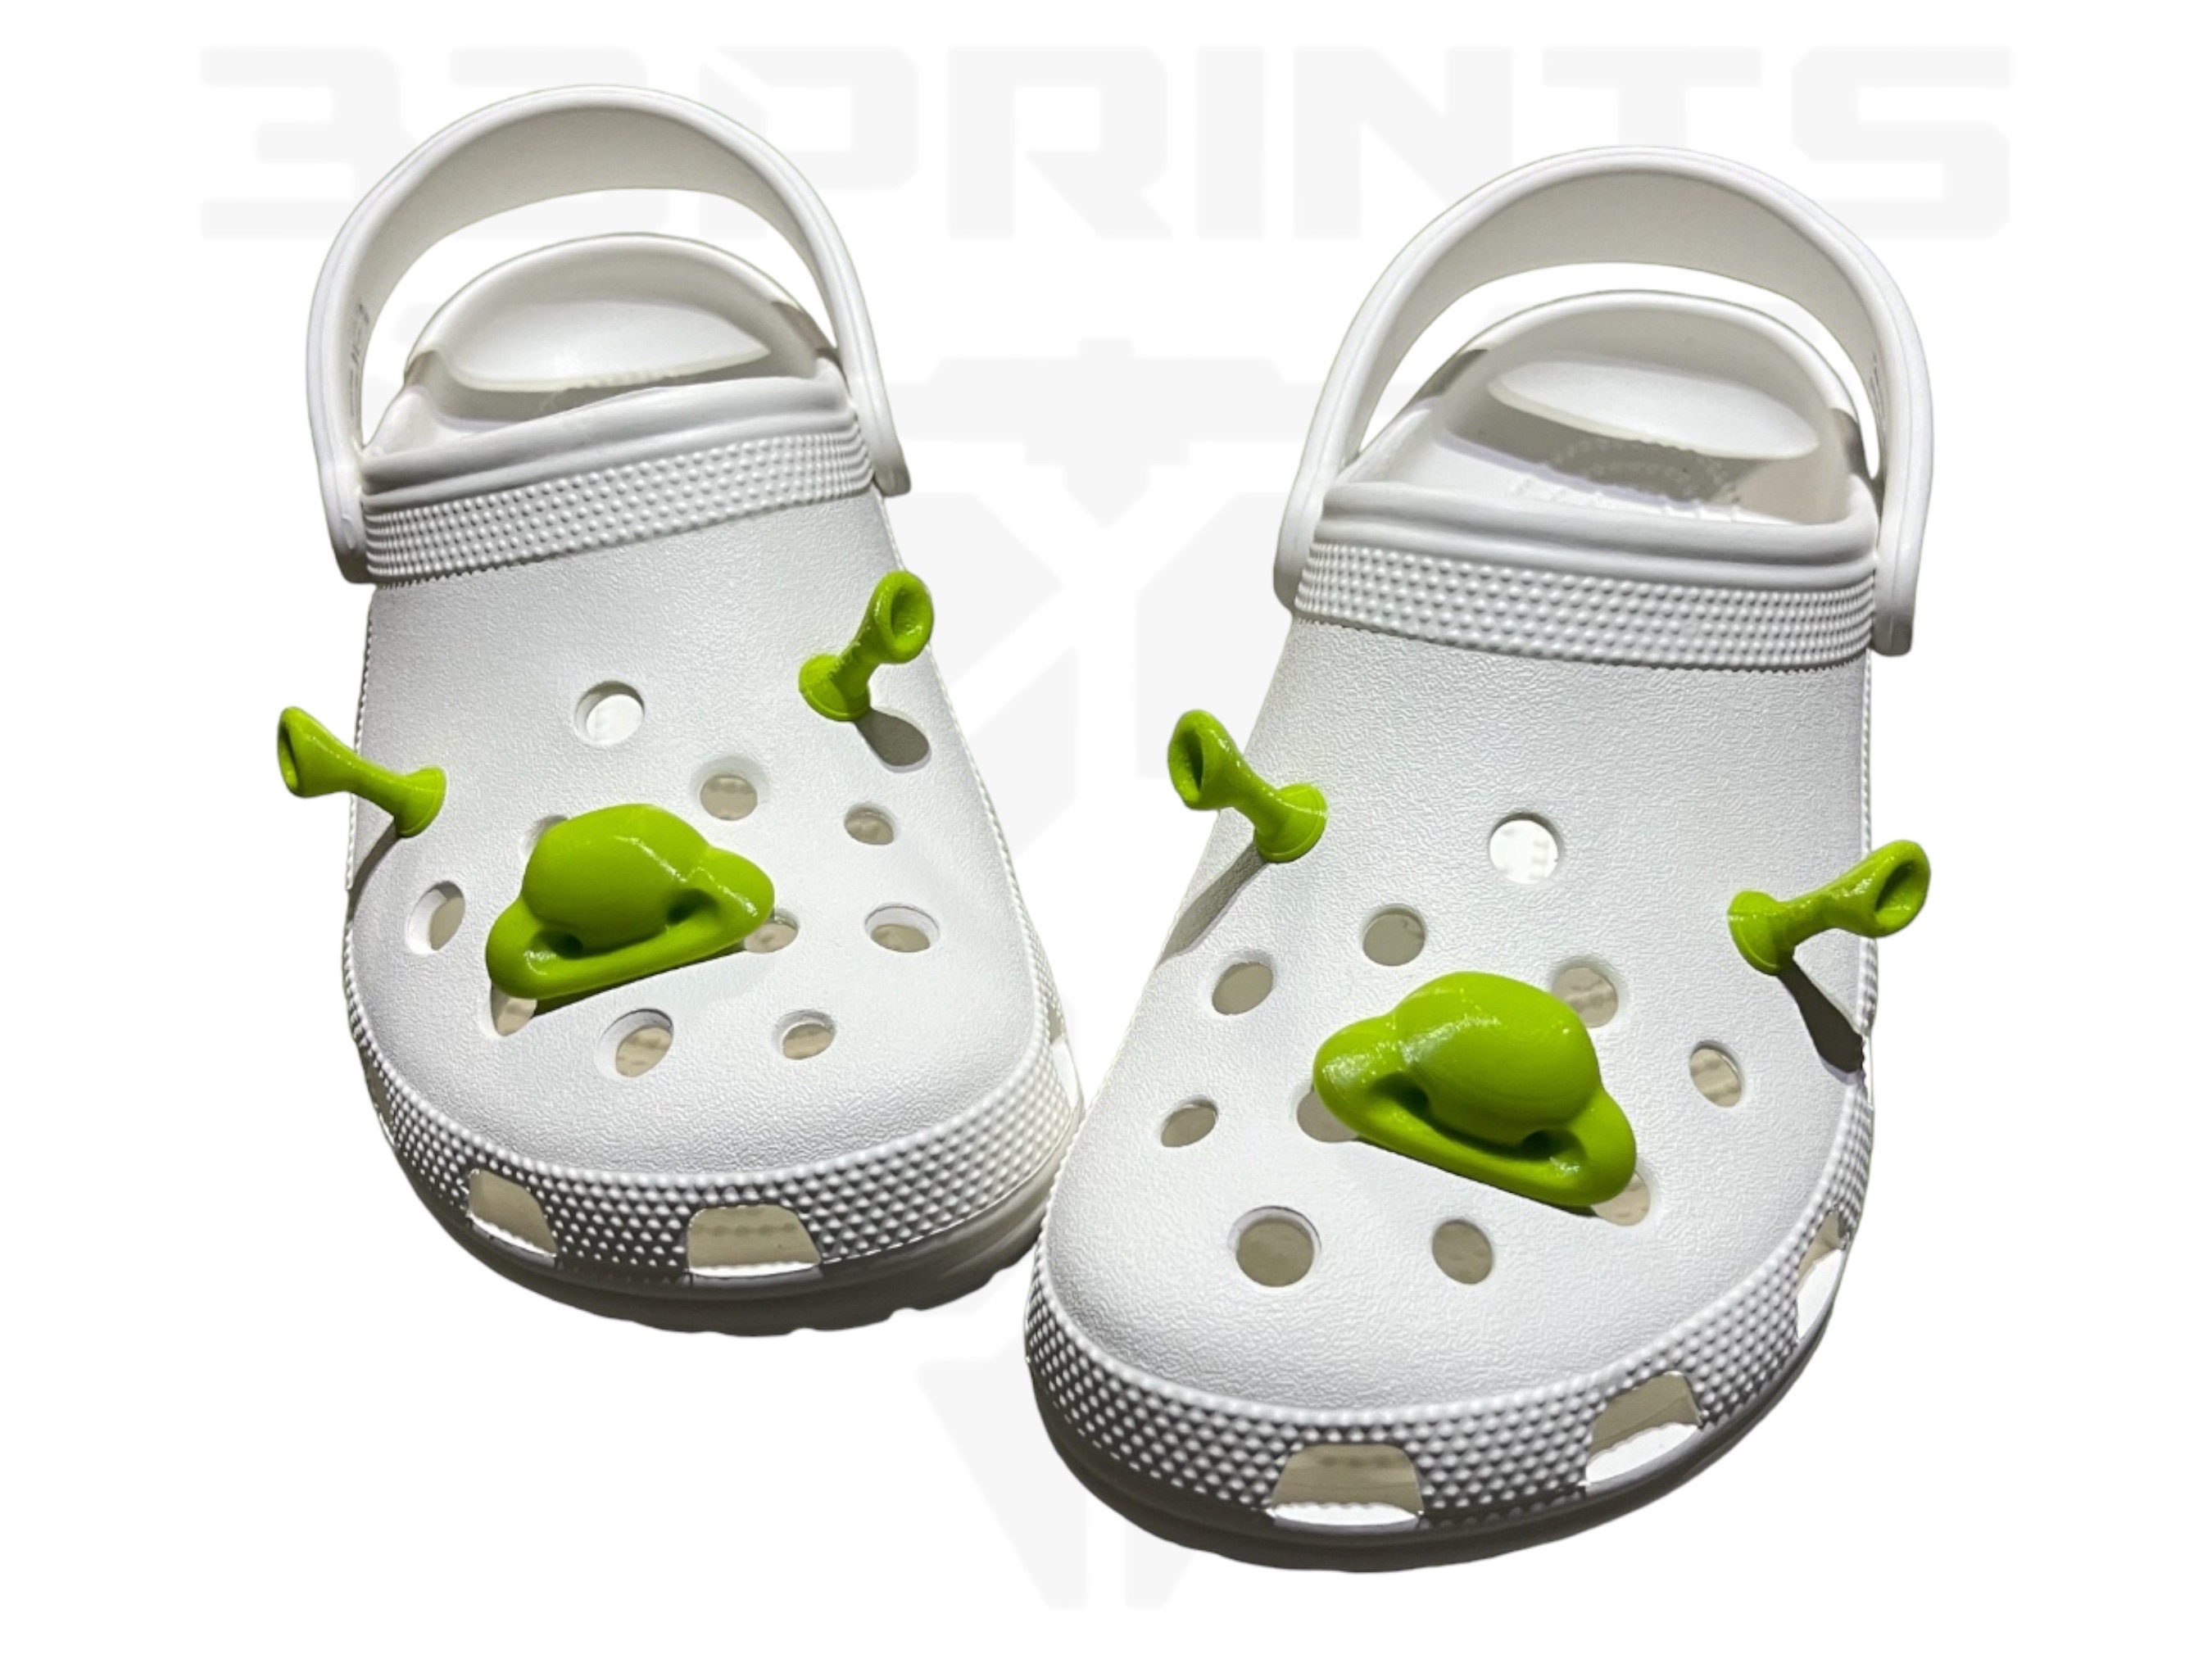 Shoe Charms Decoration Cartoon Shrek Ears Crocs Charms Diy Shoe